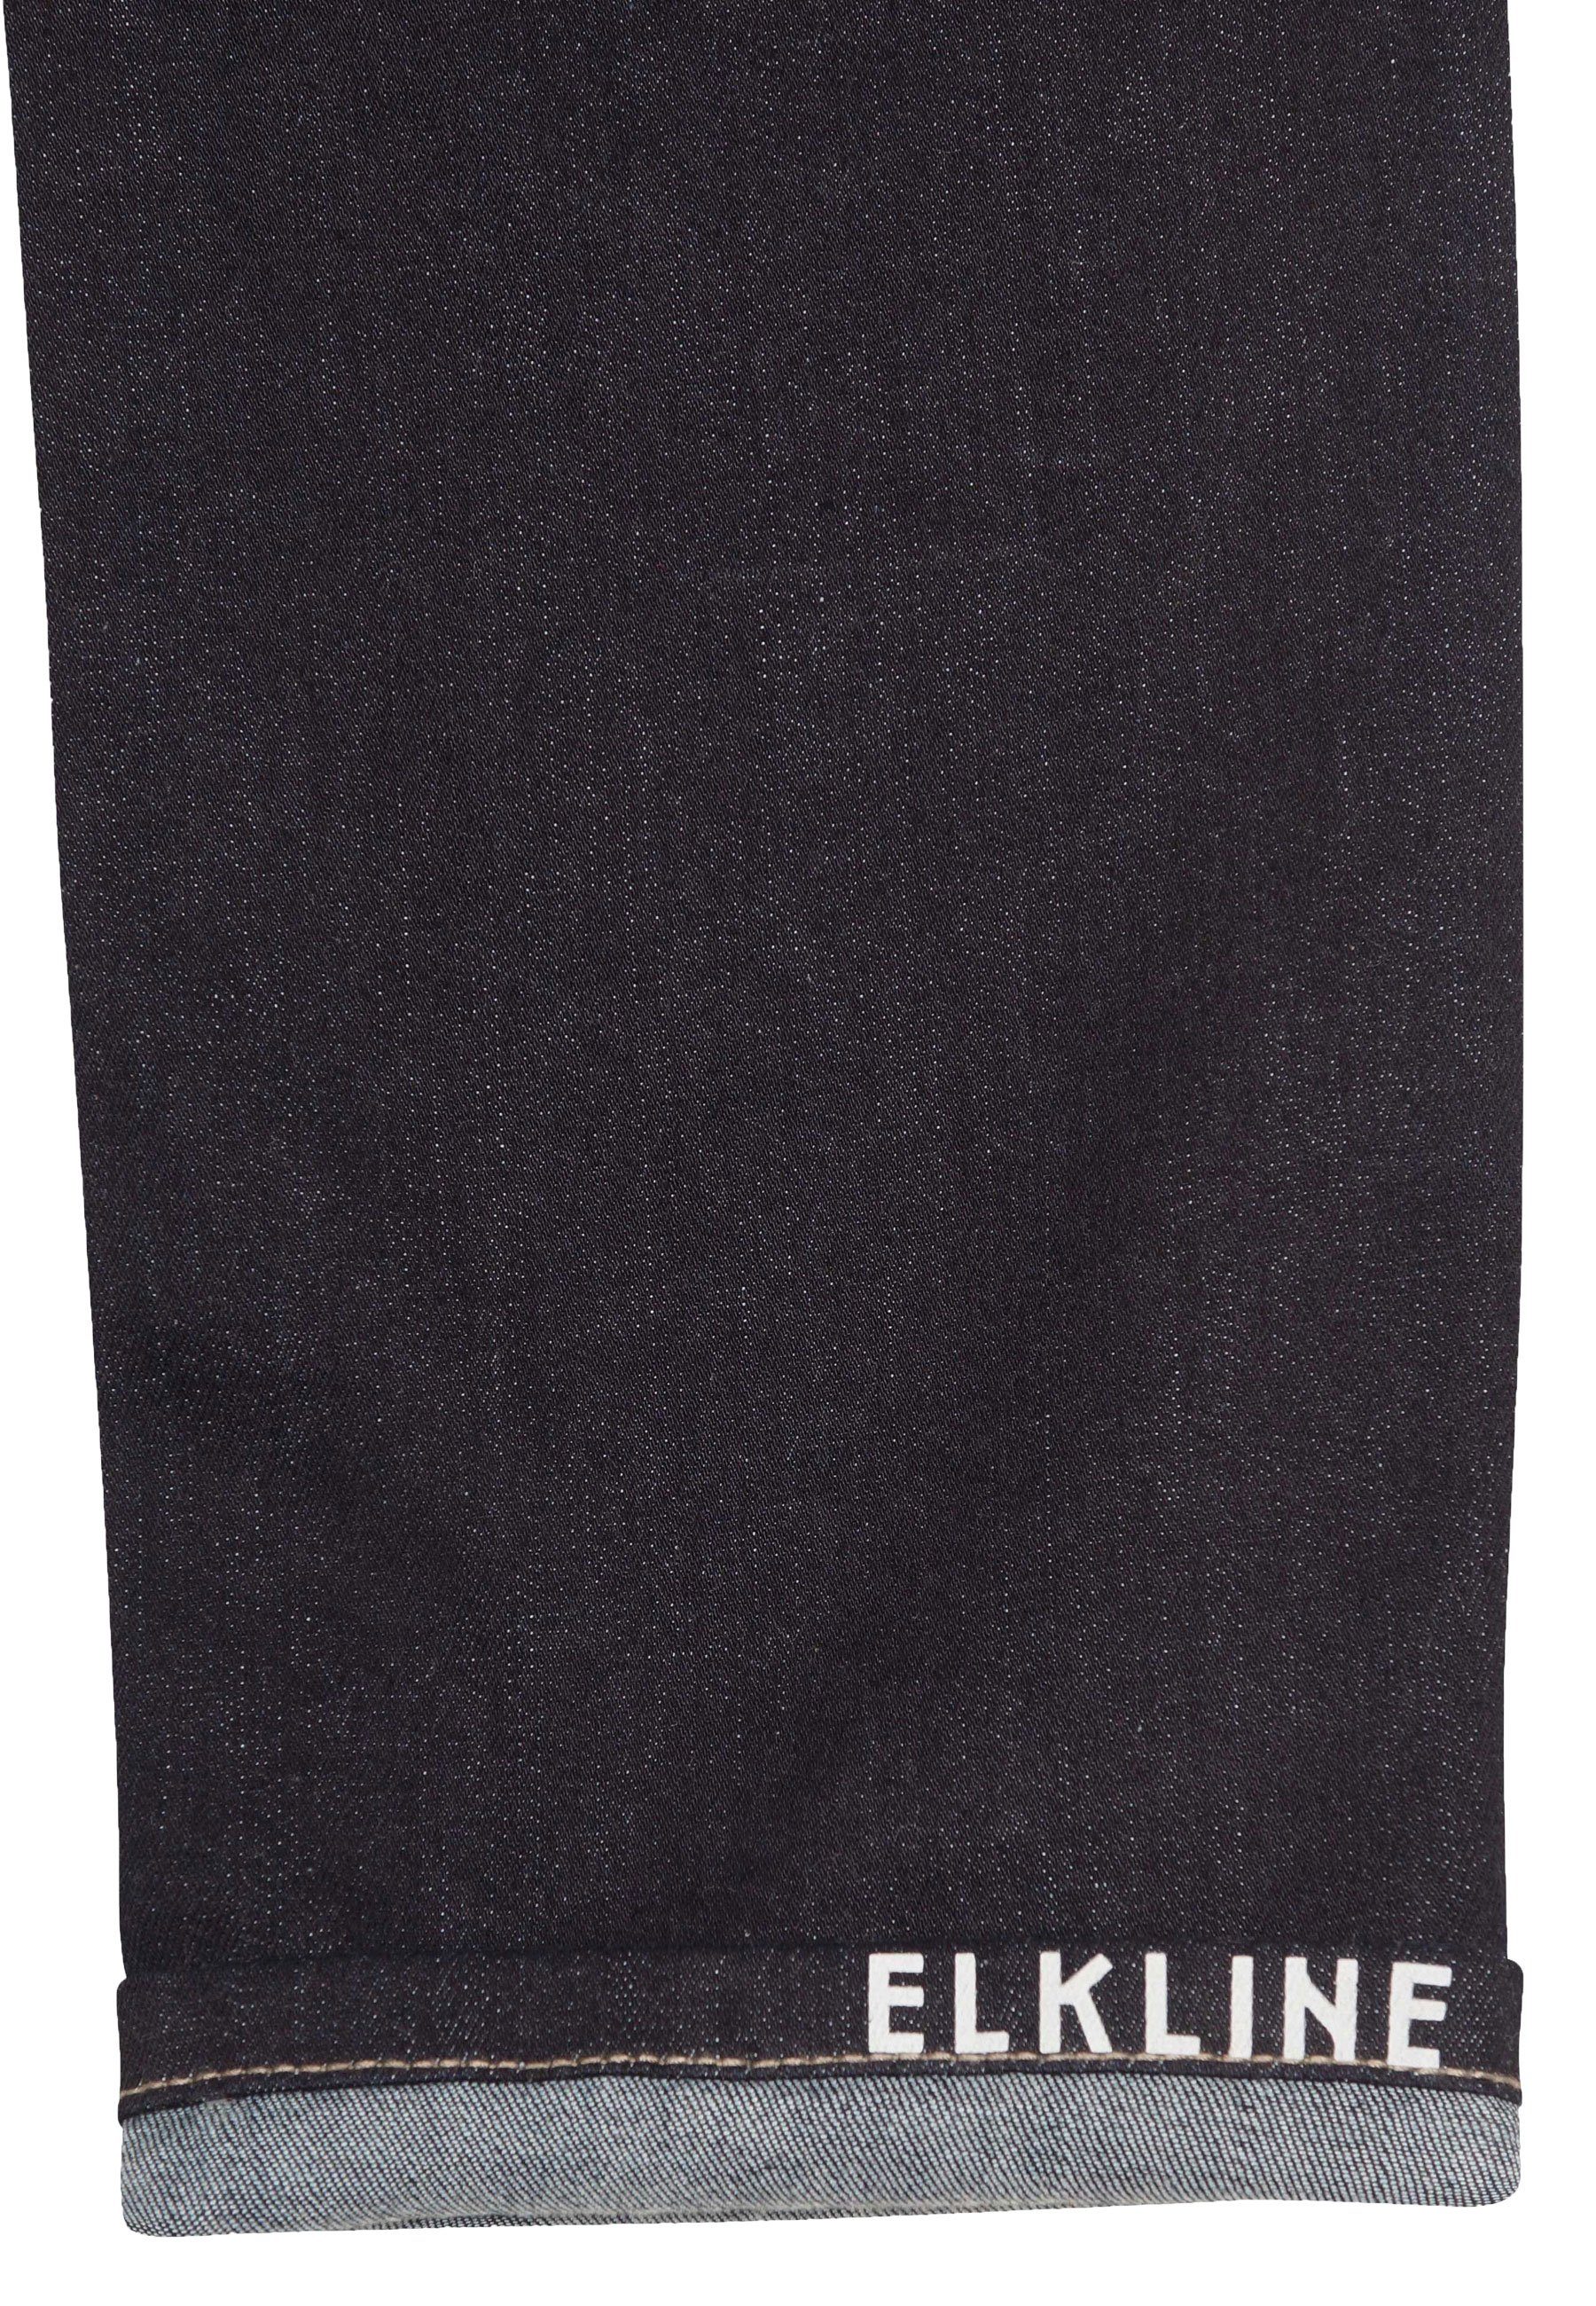 Klassiker Five-Pocket-Stretch darkdenim Strandhose Compagnon Elkline - bequemer